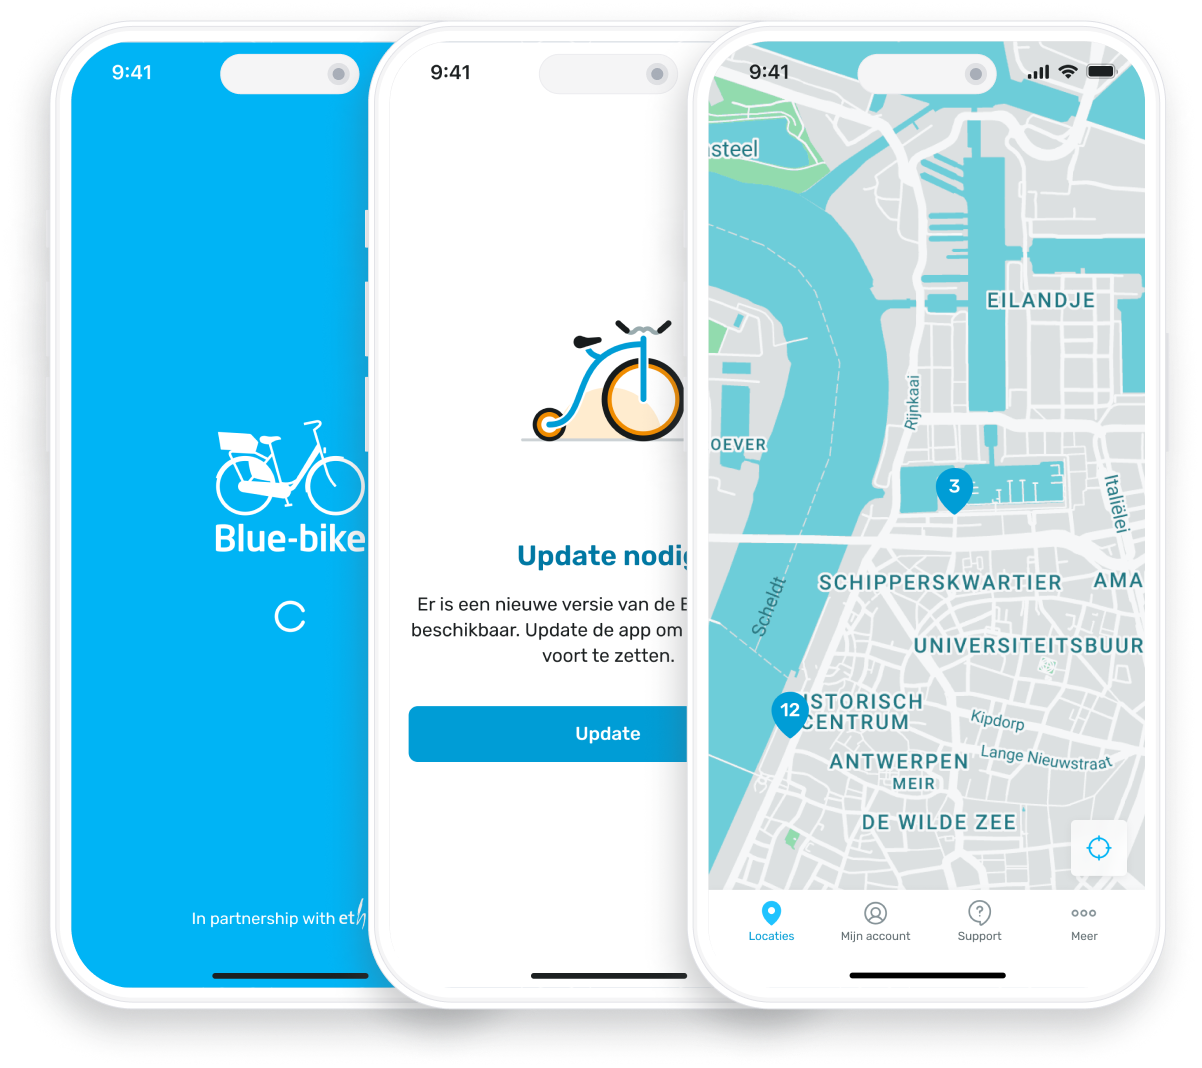 Blue-bike app